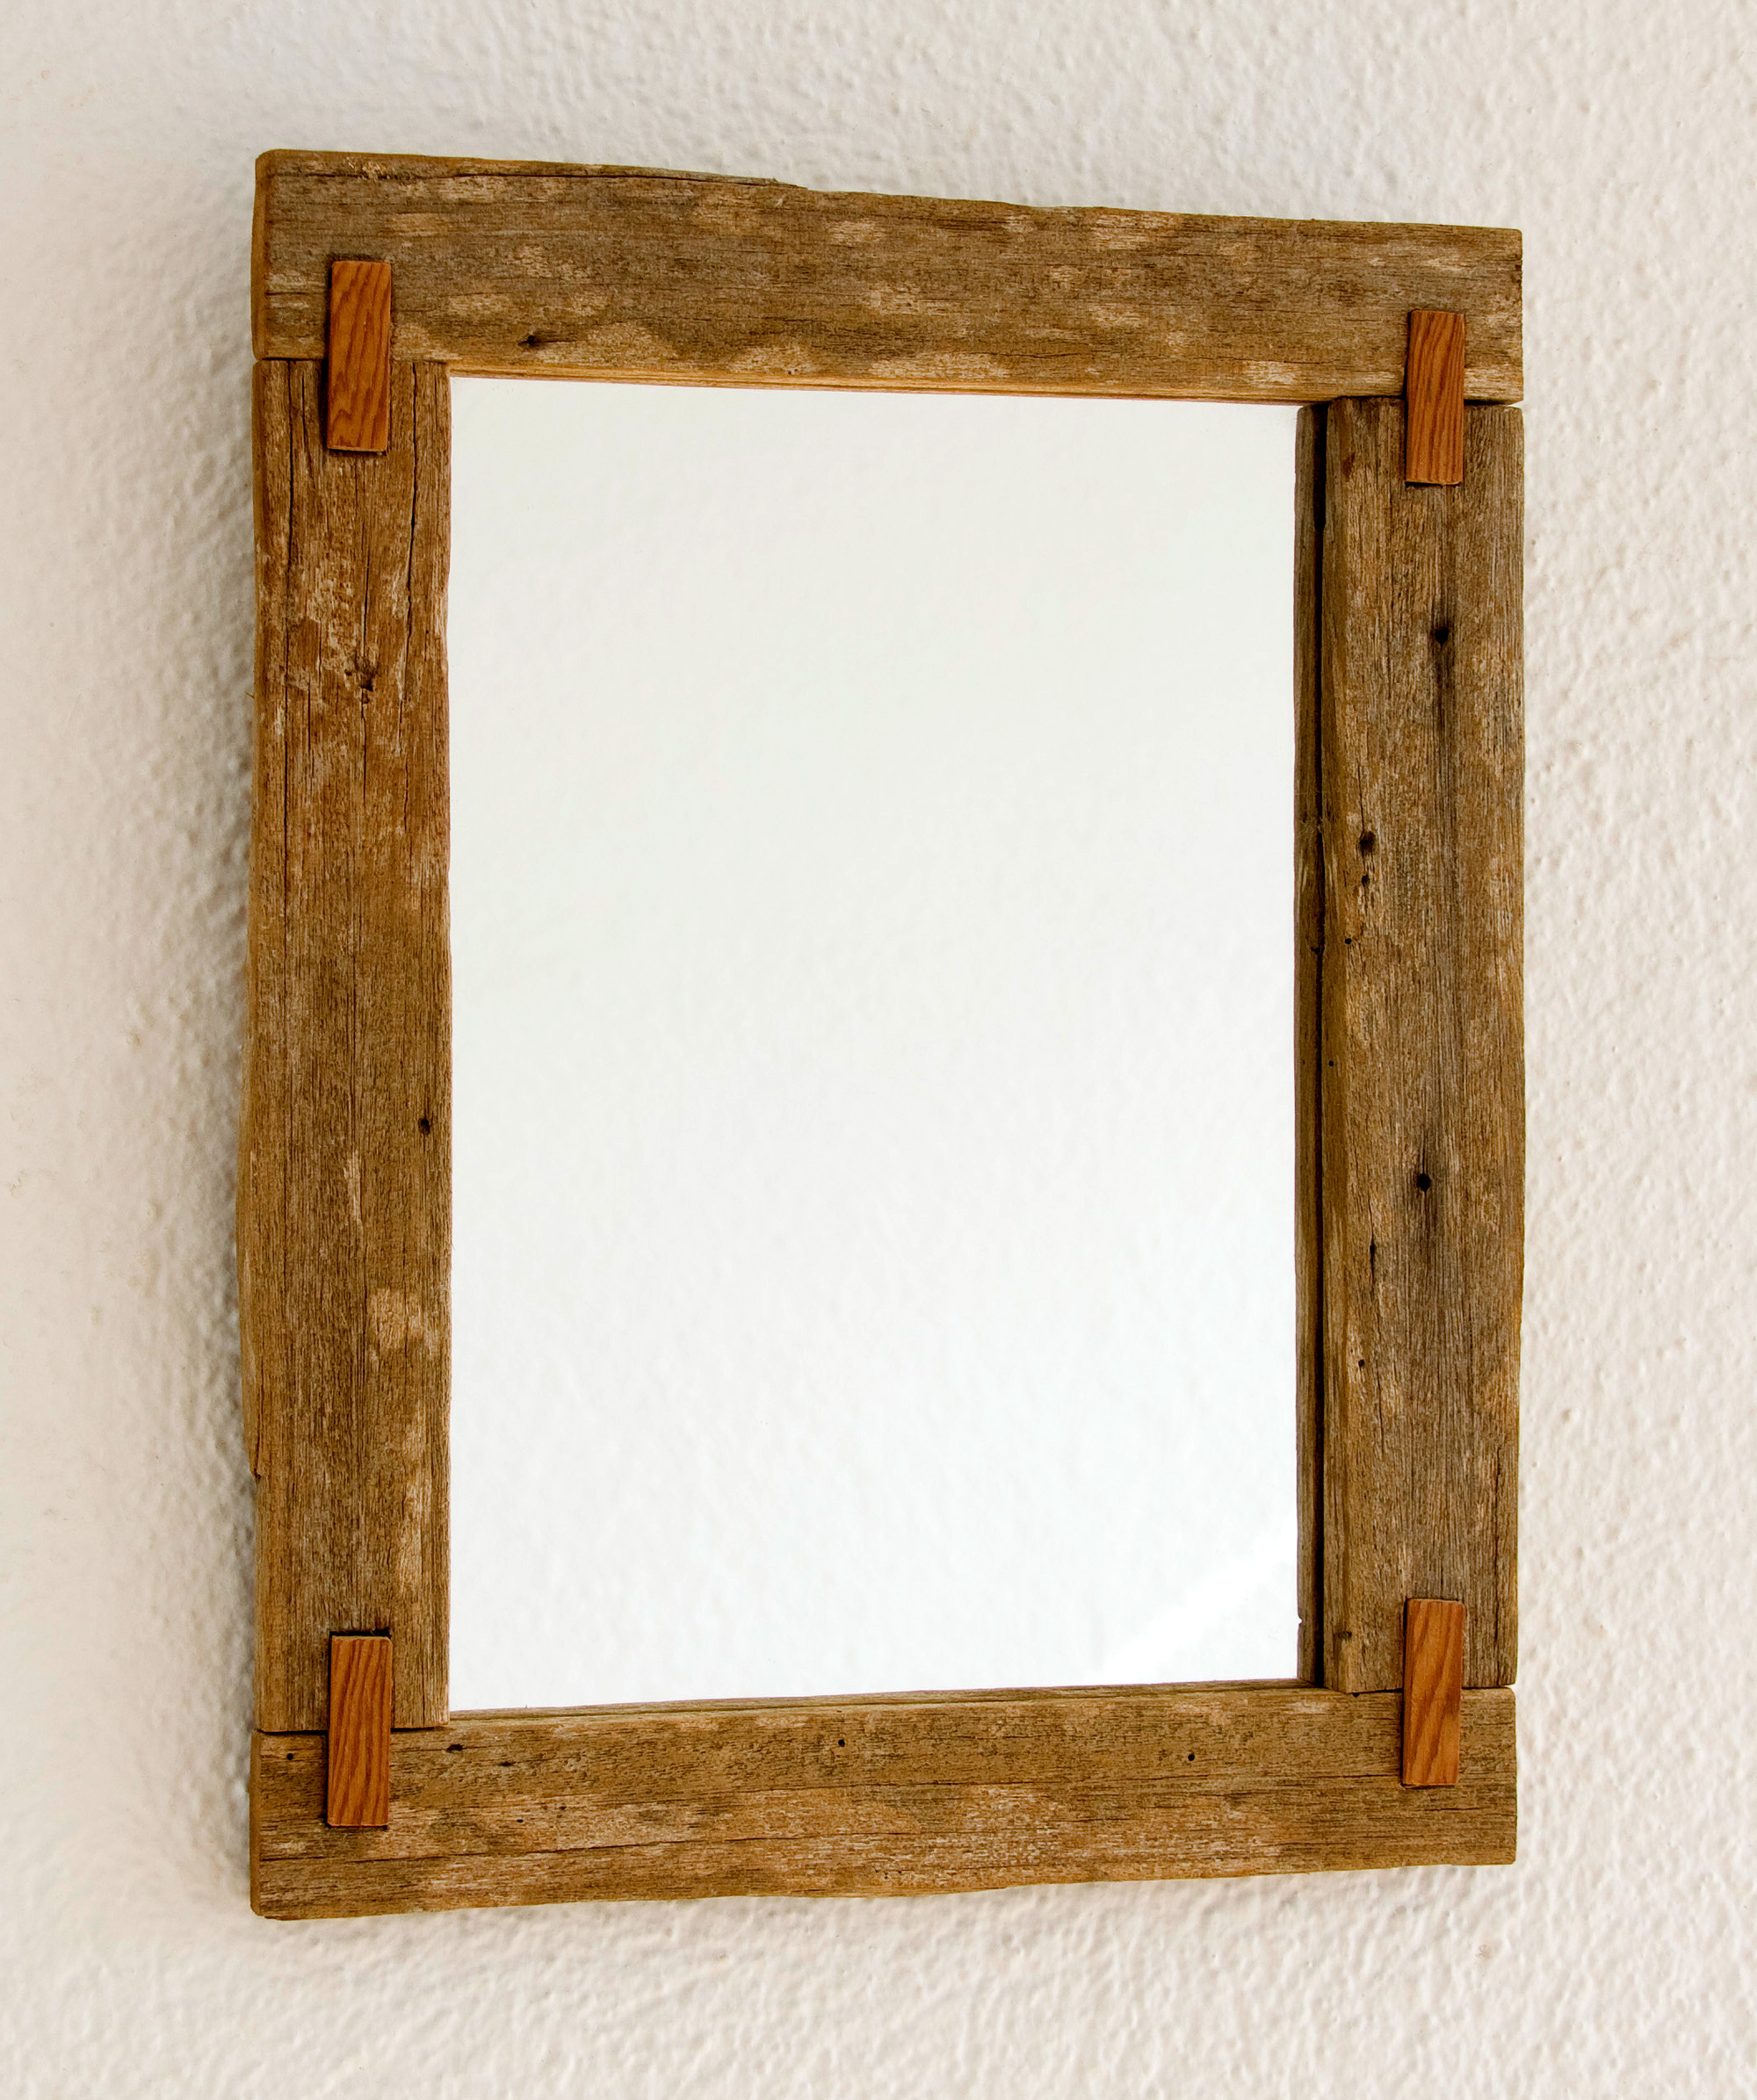 Espejo rústico con ensambles de madera